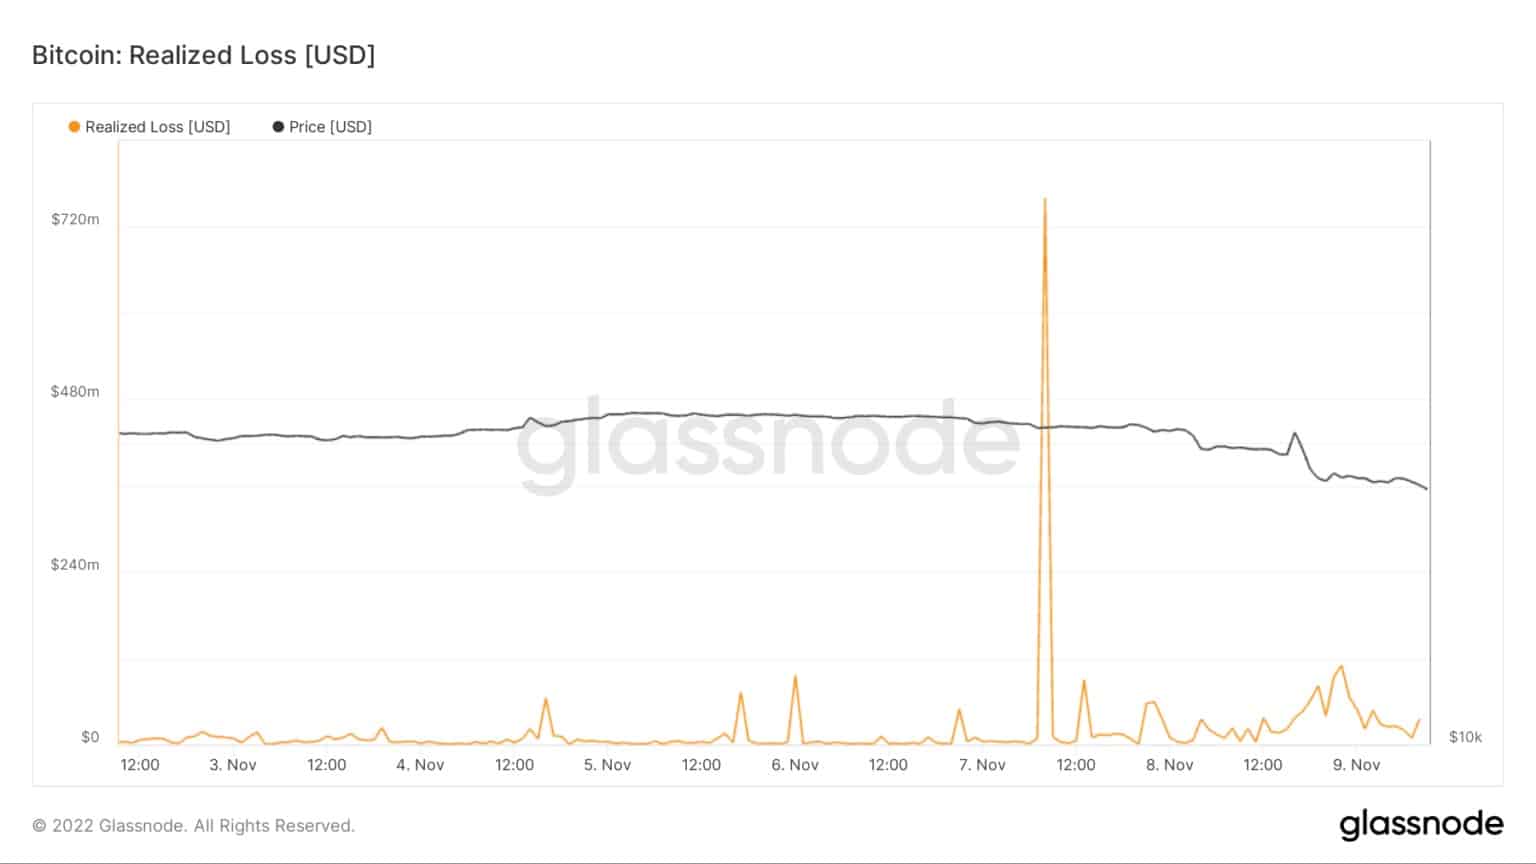 Grafiek met het gerealiseerde verlies voor Bitcoin van 3 november tot 9 november (Bron: Glassnode)